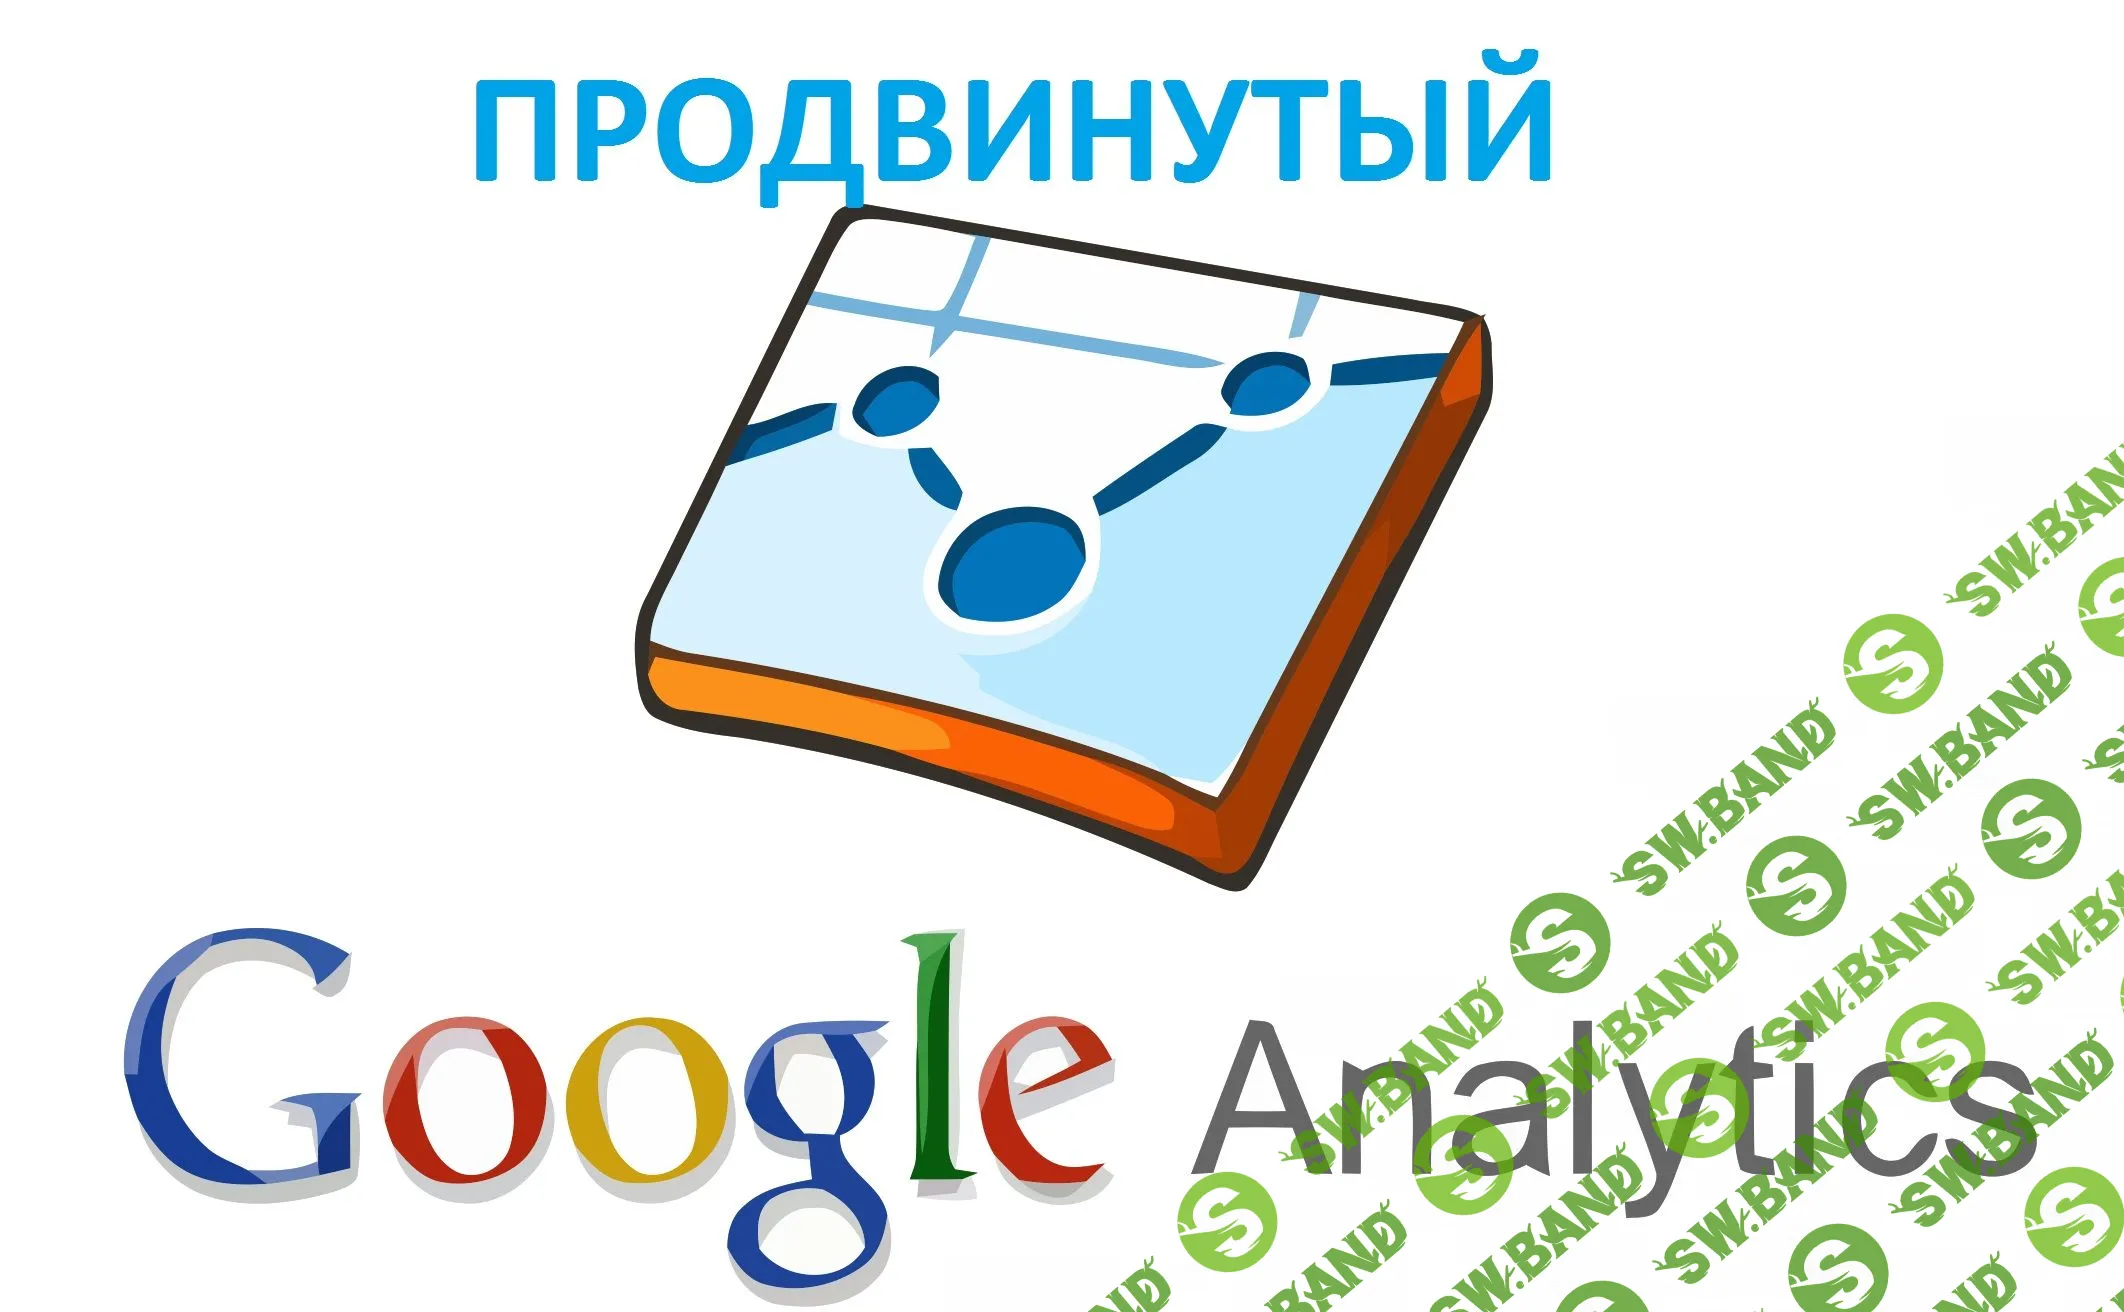 Продвинутая работа с Google Analytics - Осипов (2017)